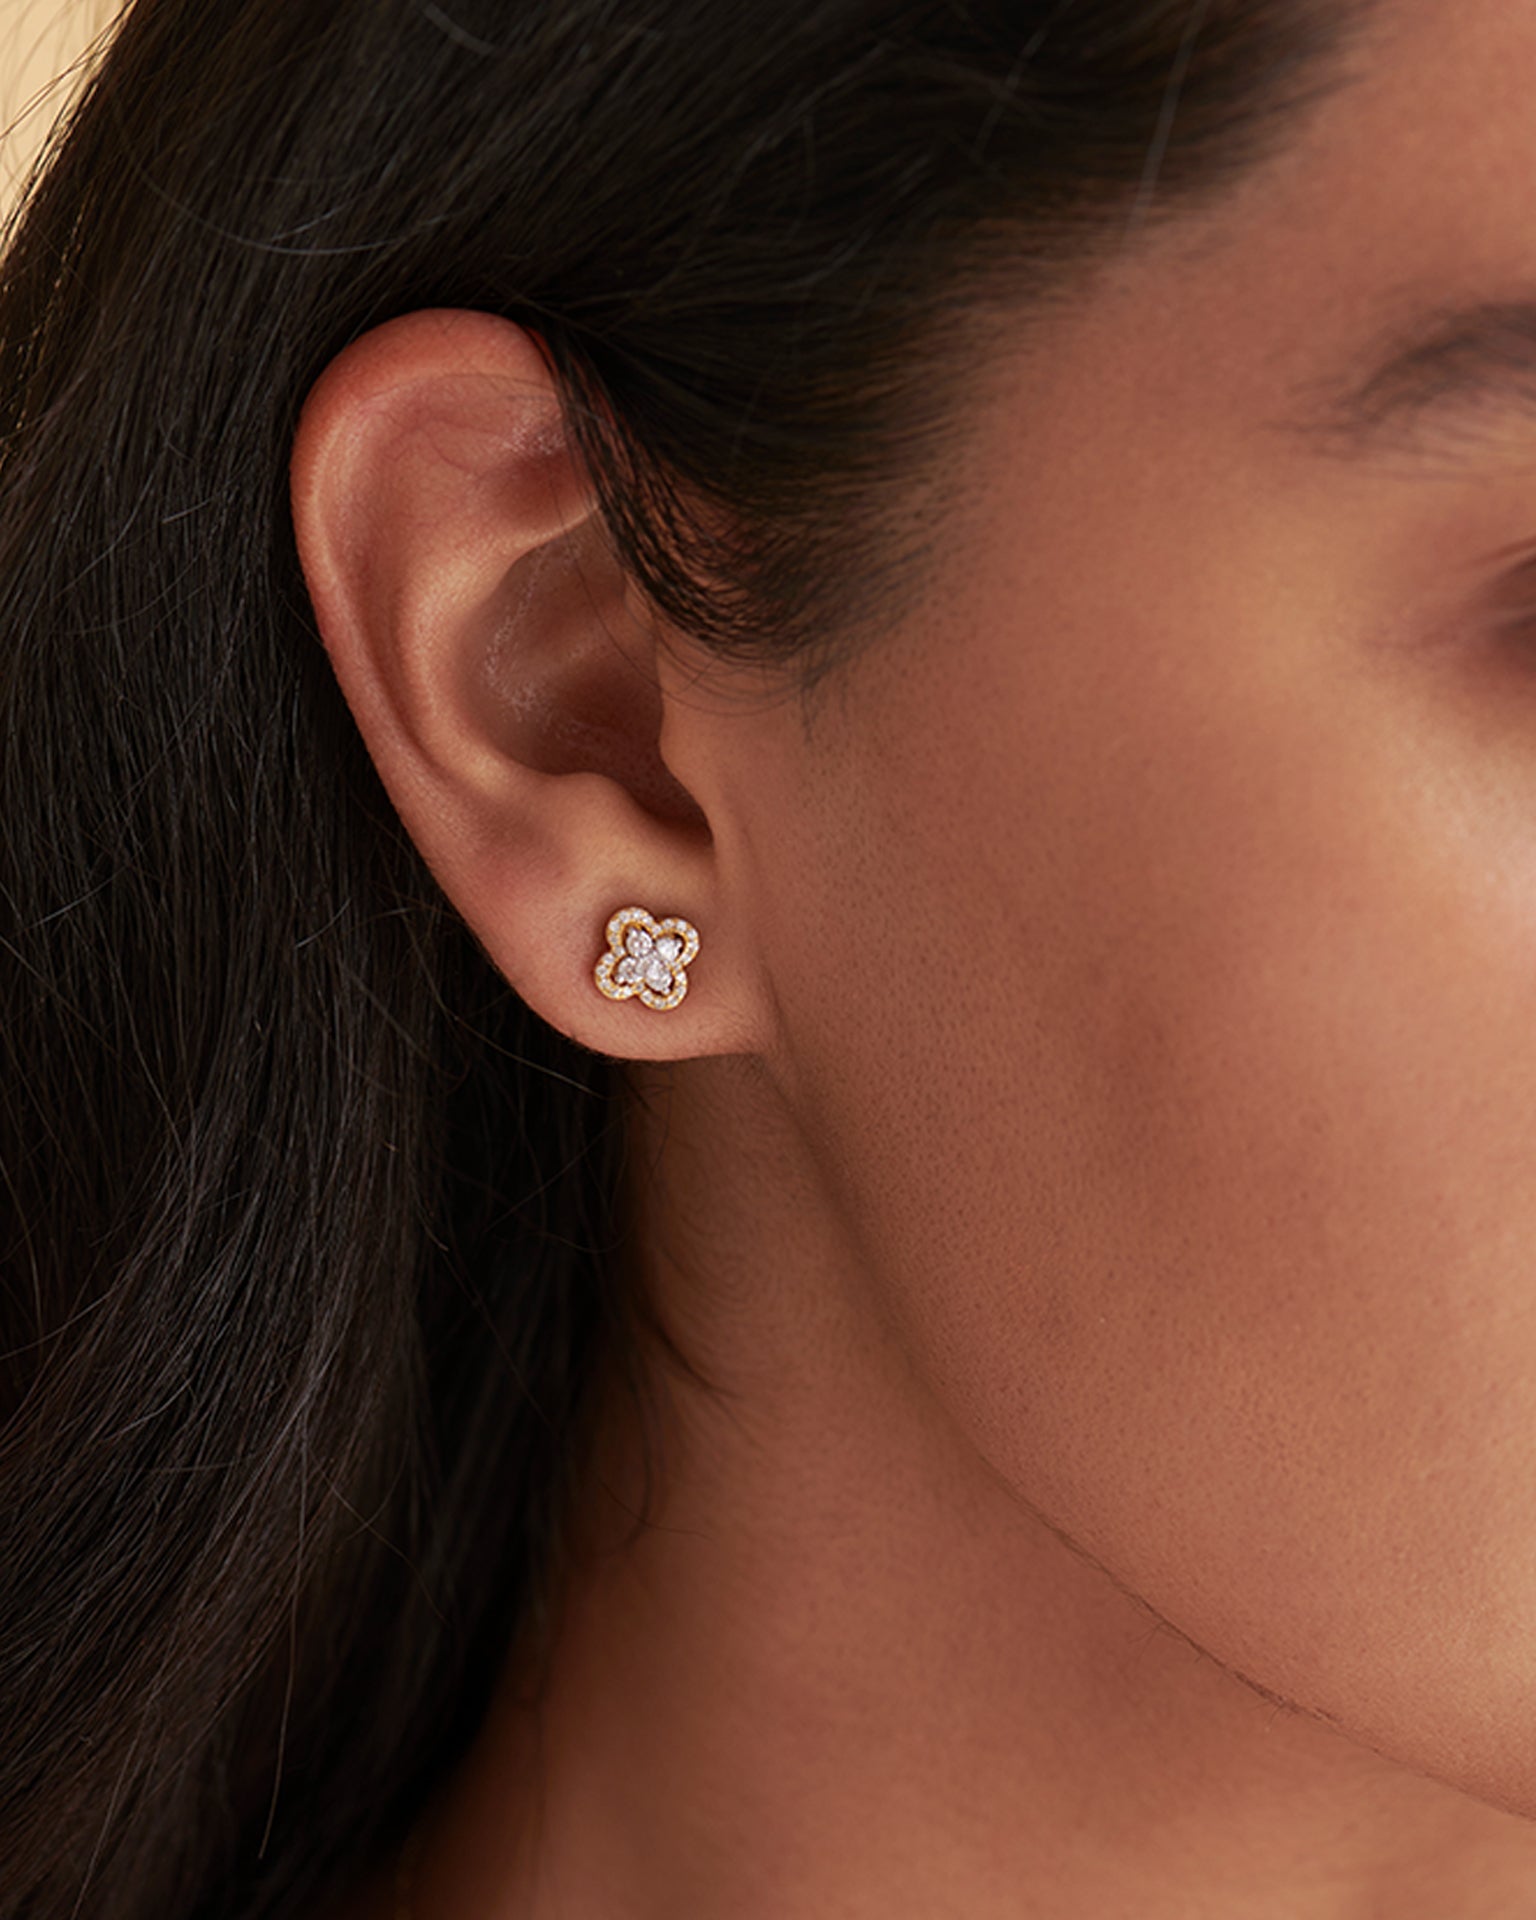 Elegant Clover Diamond Earrings